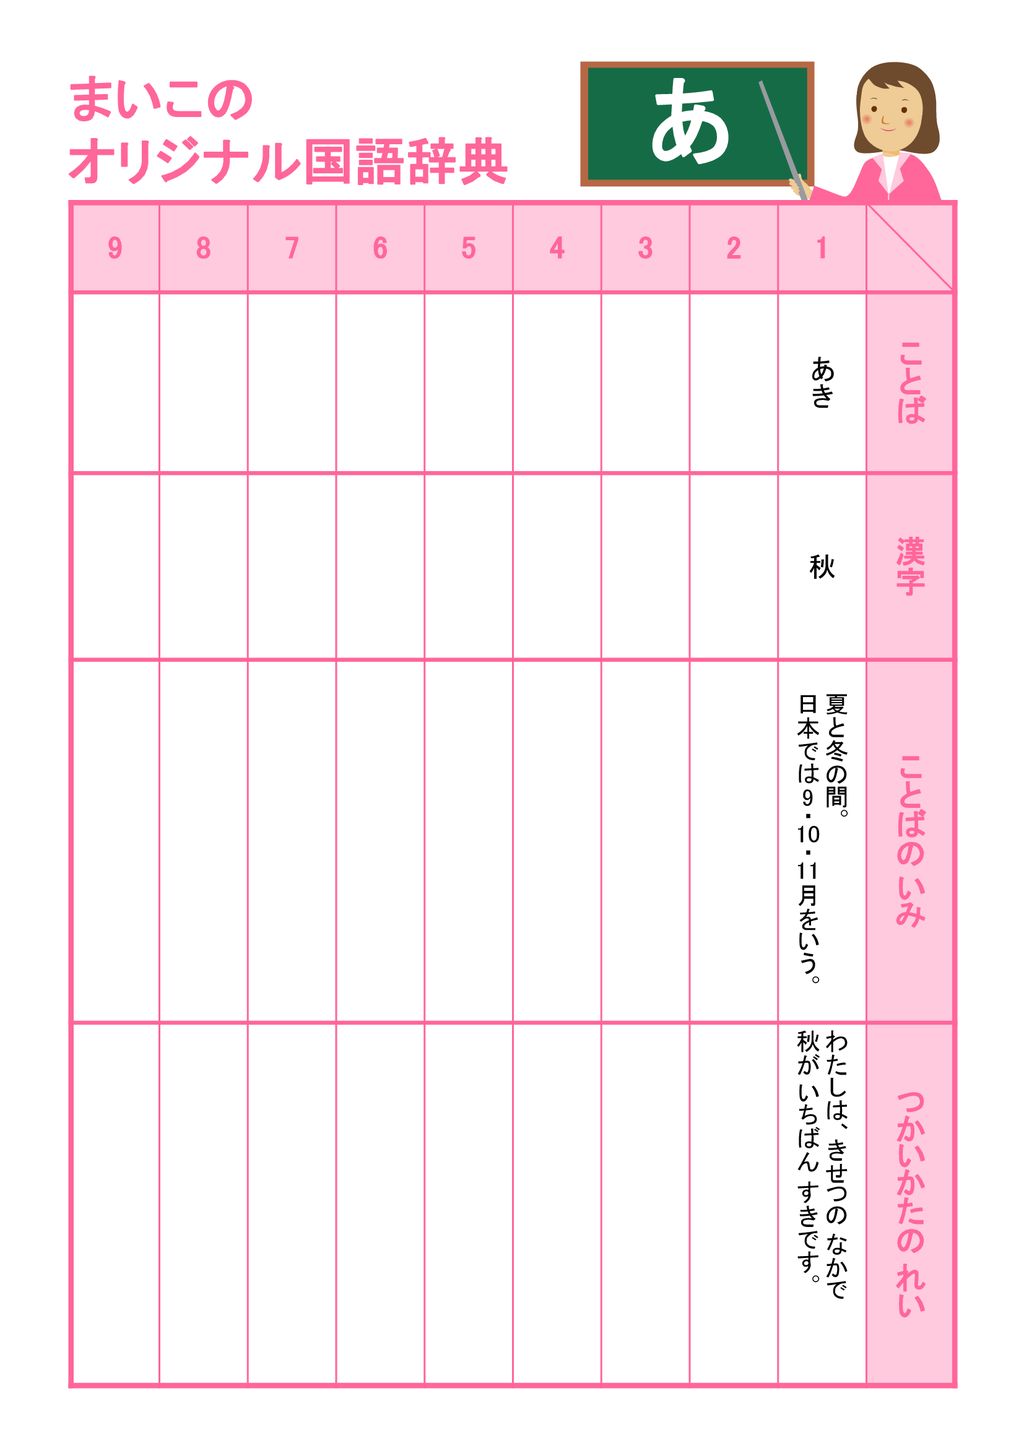 あ まいこの オリジナル国語辞典 ことば 漢字 ことばの いみ つかいかたの れい あき 秋 Ppt Download